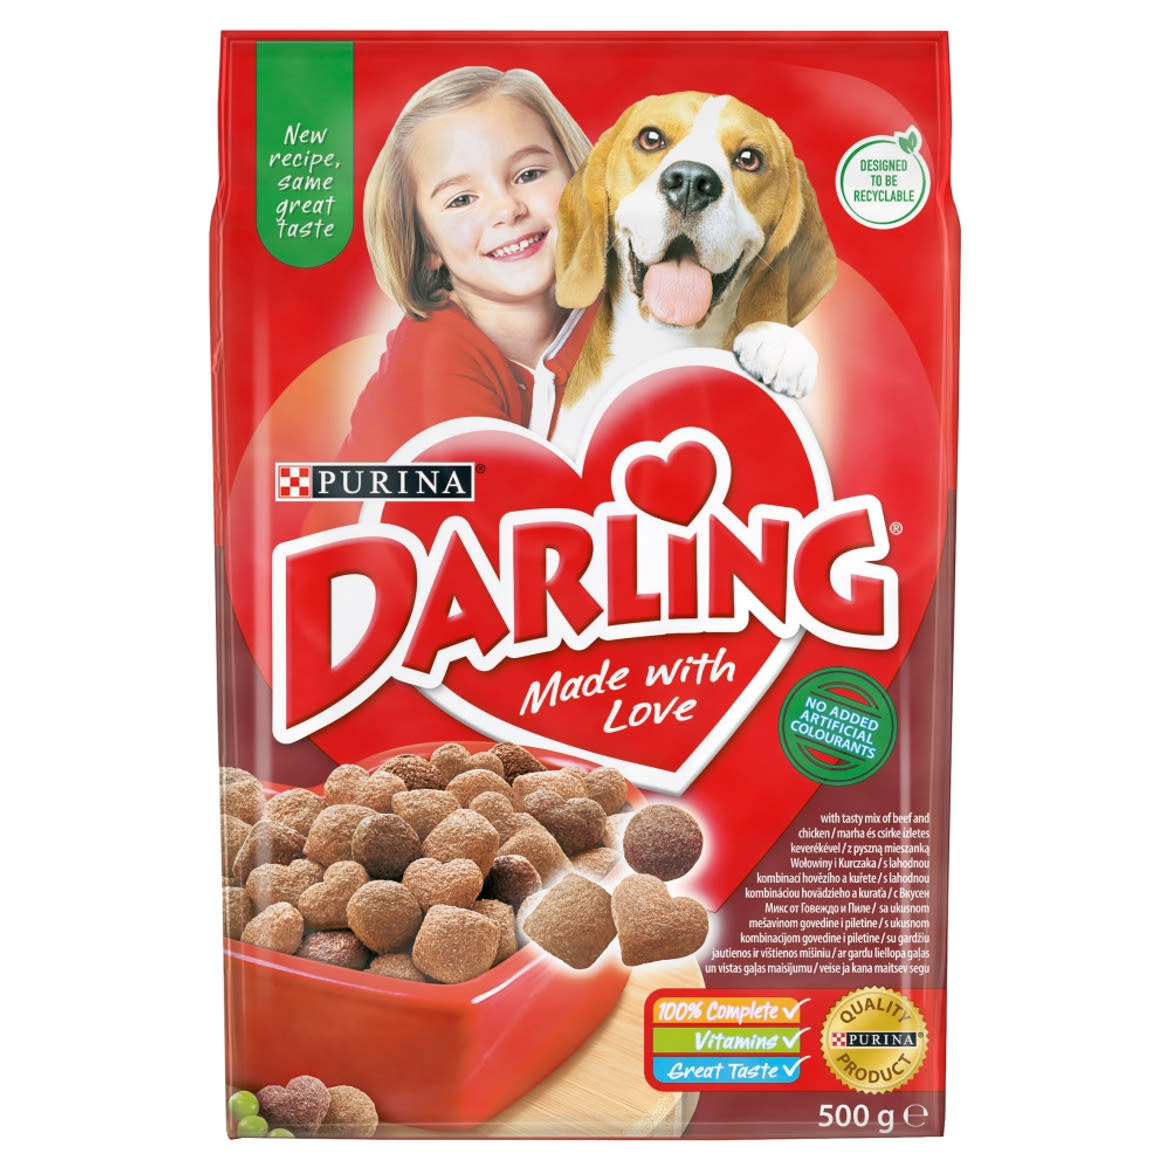 Darling teljes értékű állateledel felnőtt kutyák számára marha és csirke ízletes keverékével 500 g